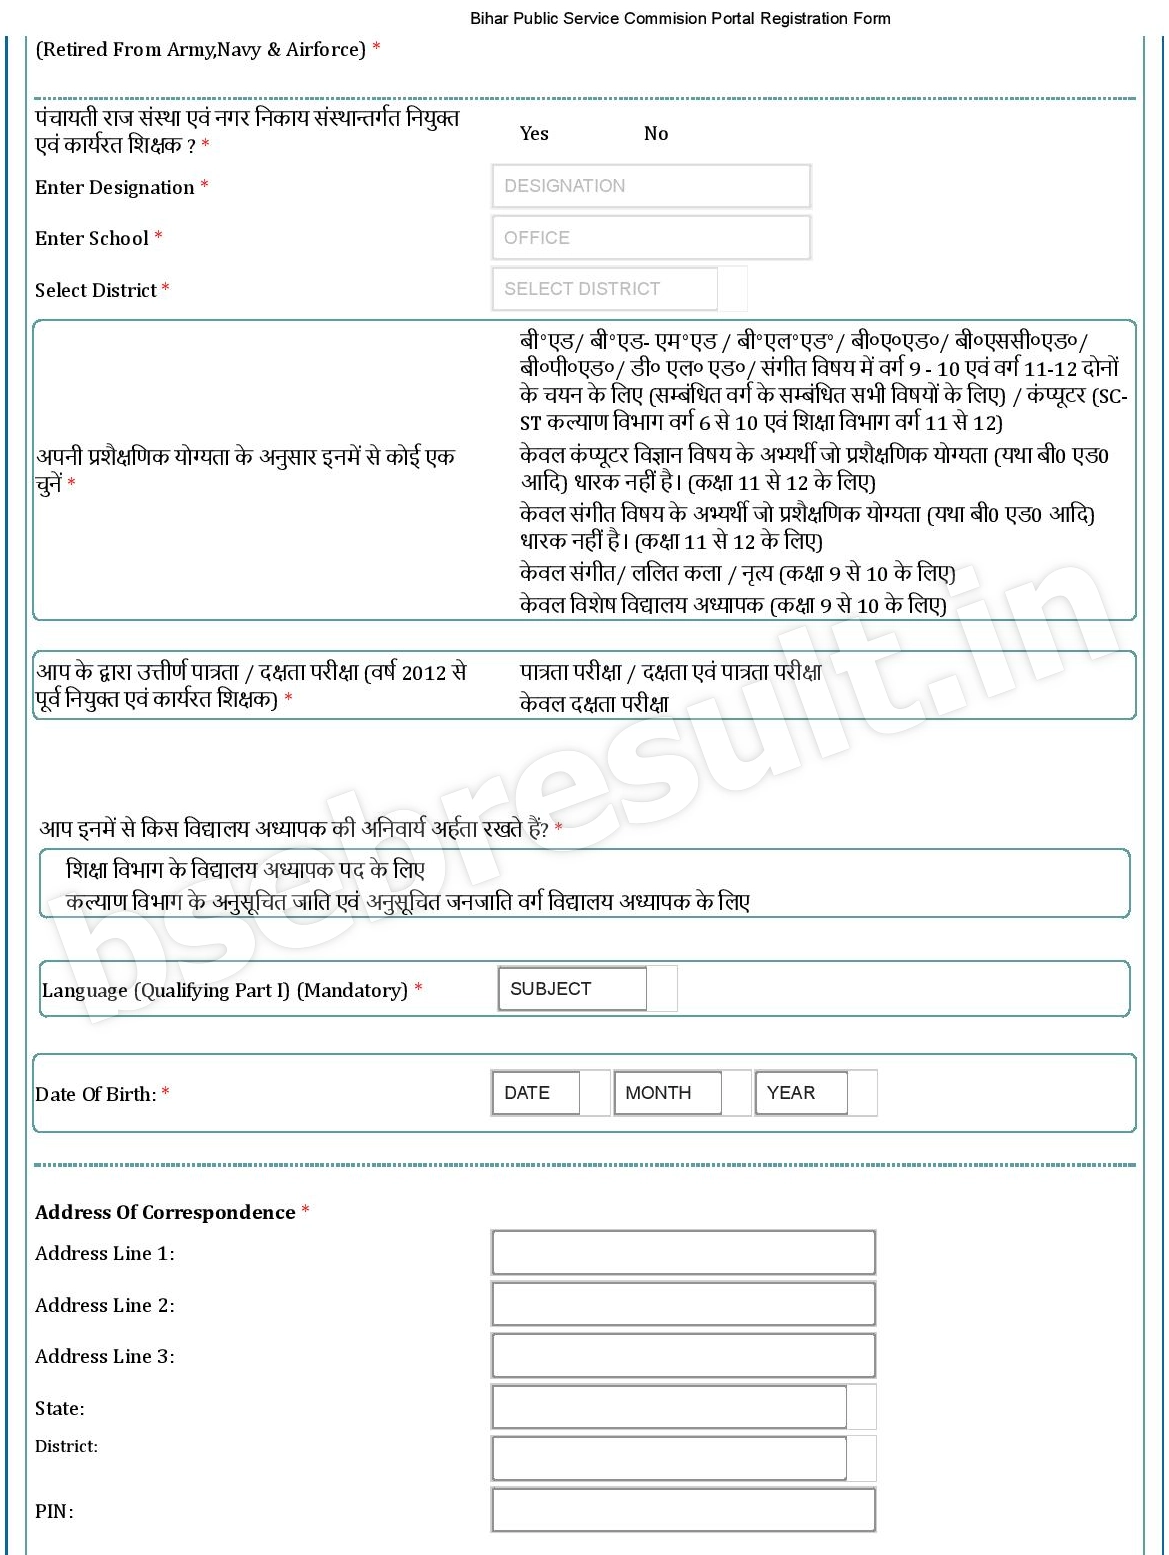 Bihar Public Service Commision Portal Registration Form-page-002